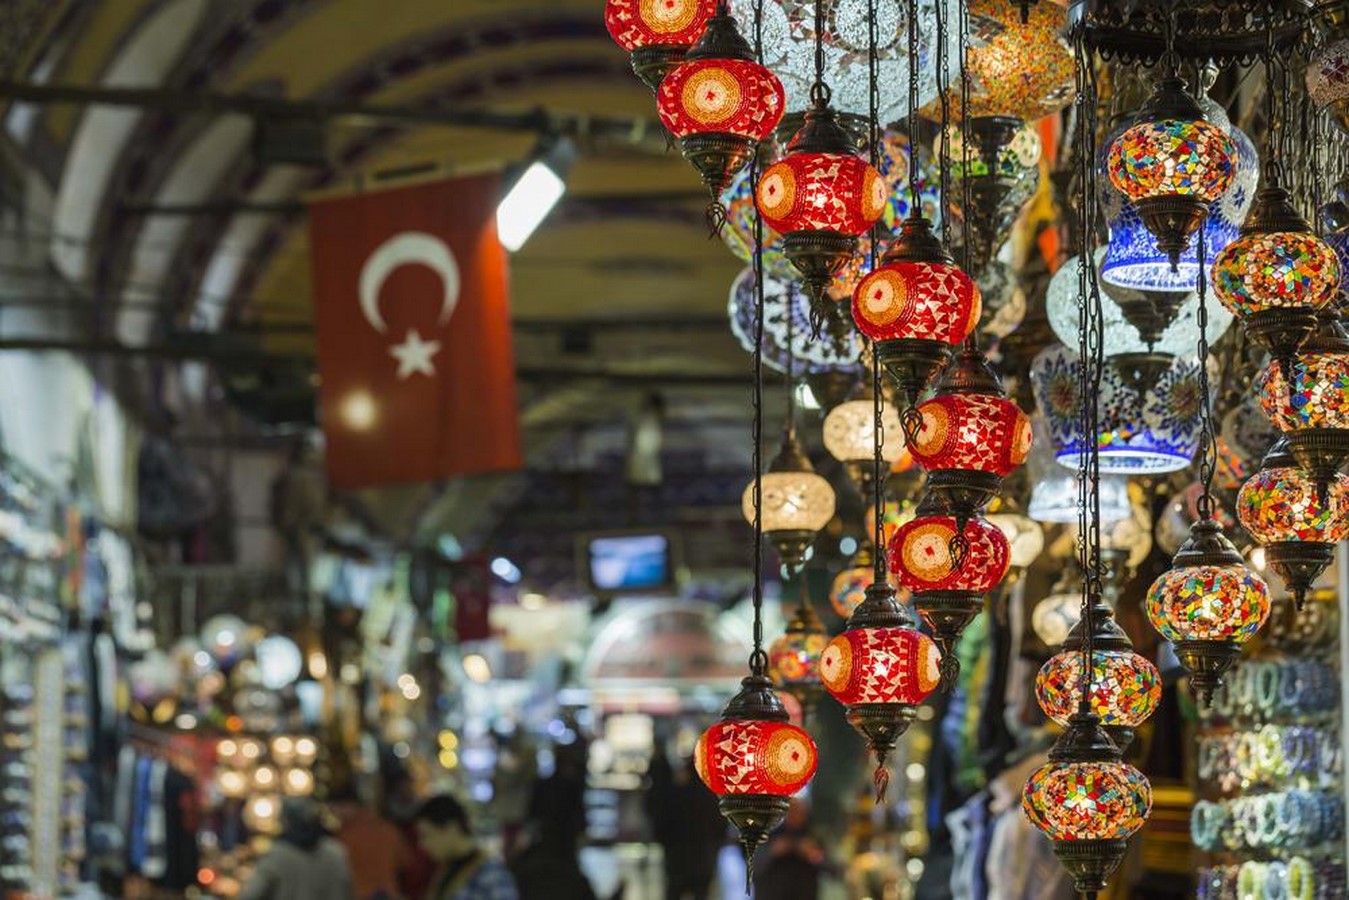 A journey through Istanbul's Grand Bazaar - Sheet6